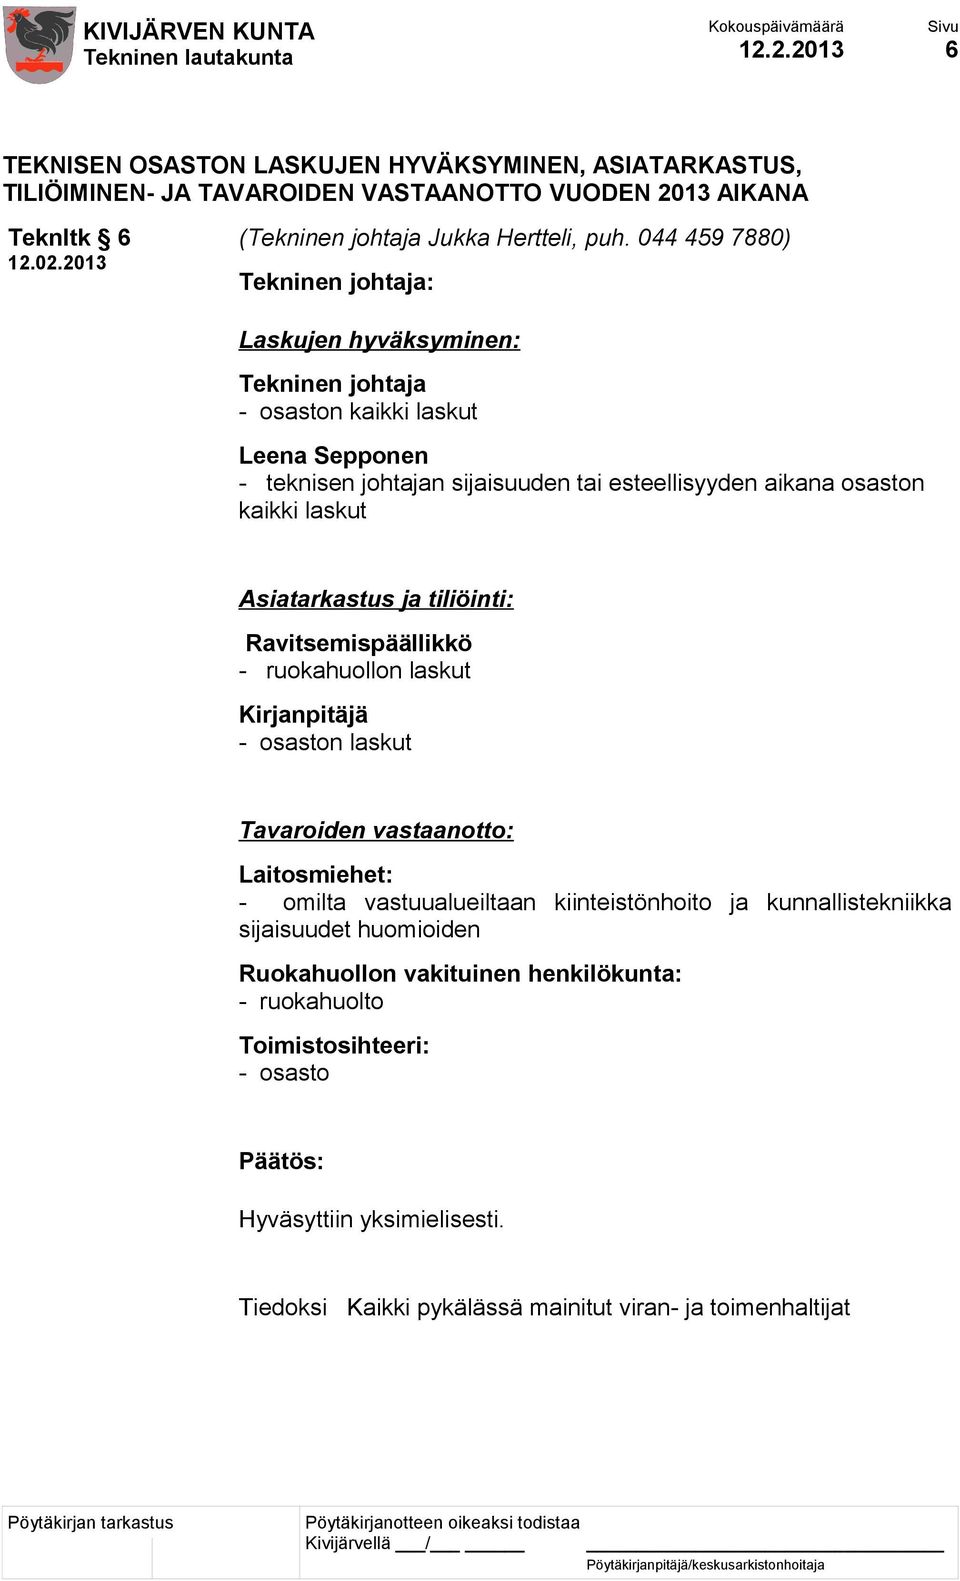 ja tiliöinti: Ravitsemispäällikkö - ruokahuollon laskut Kirjanpitäjä - osaston laskut Tavaroiden vastaanotto: Laitosmiehet: - omilta vastuualueiltaan kiinteistönhoito ja